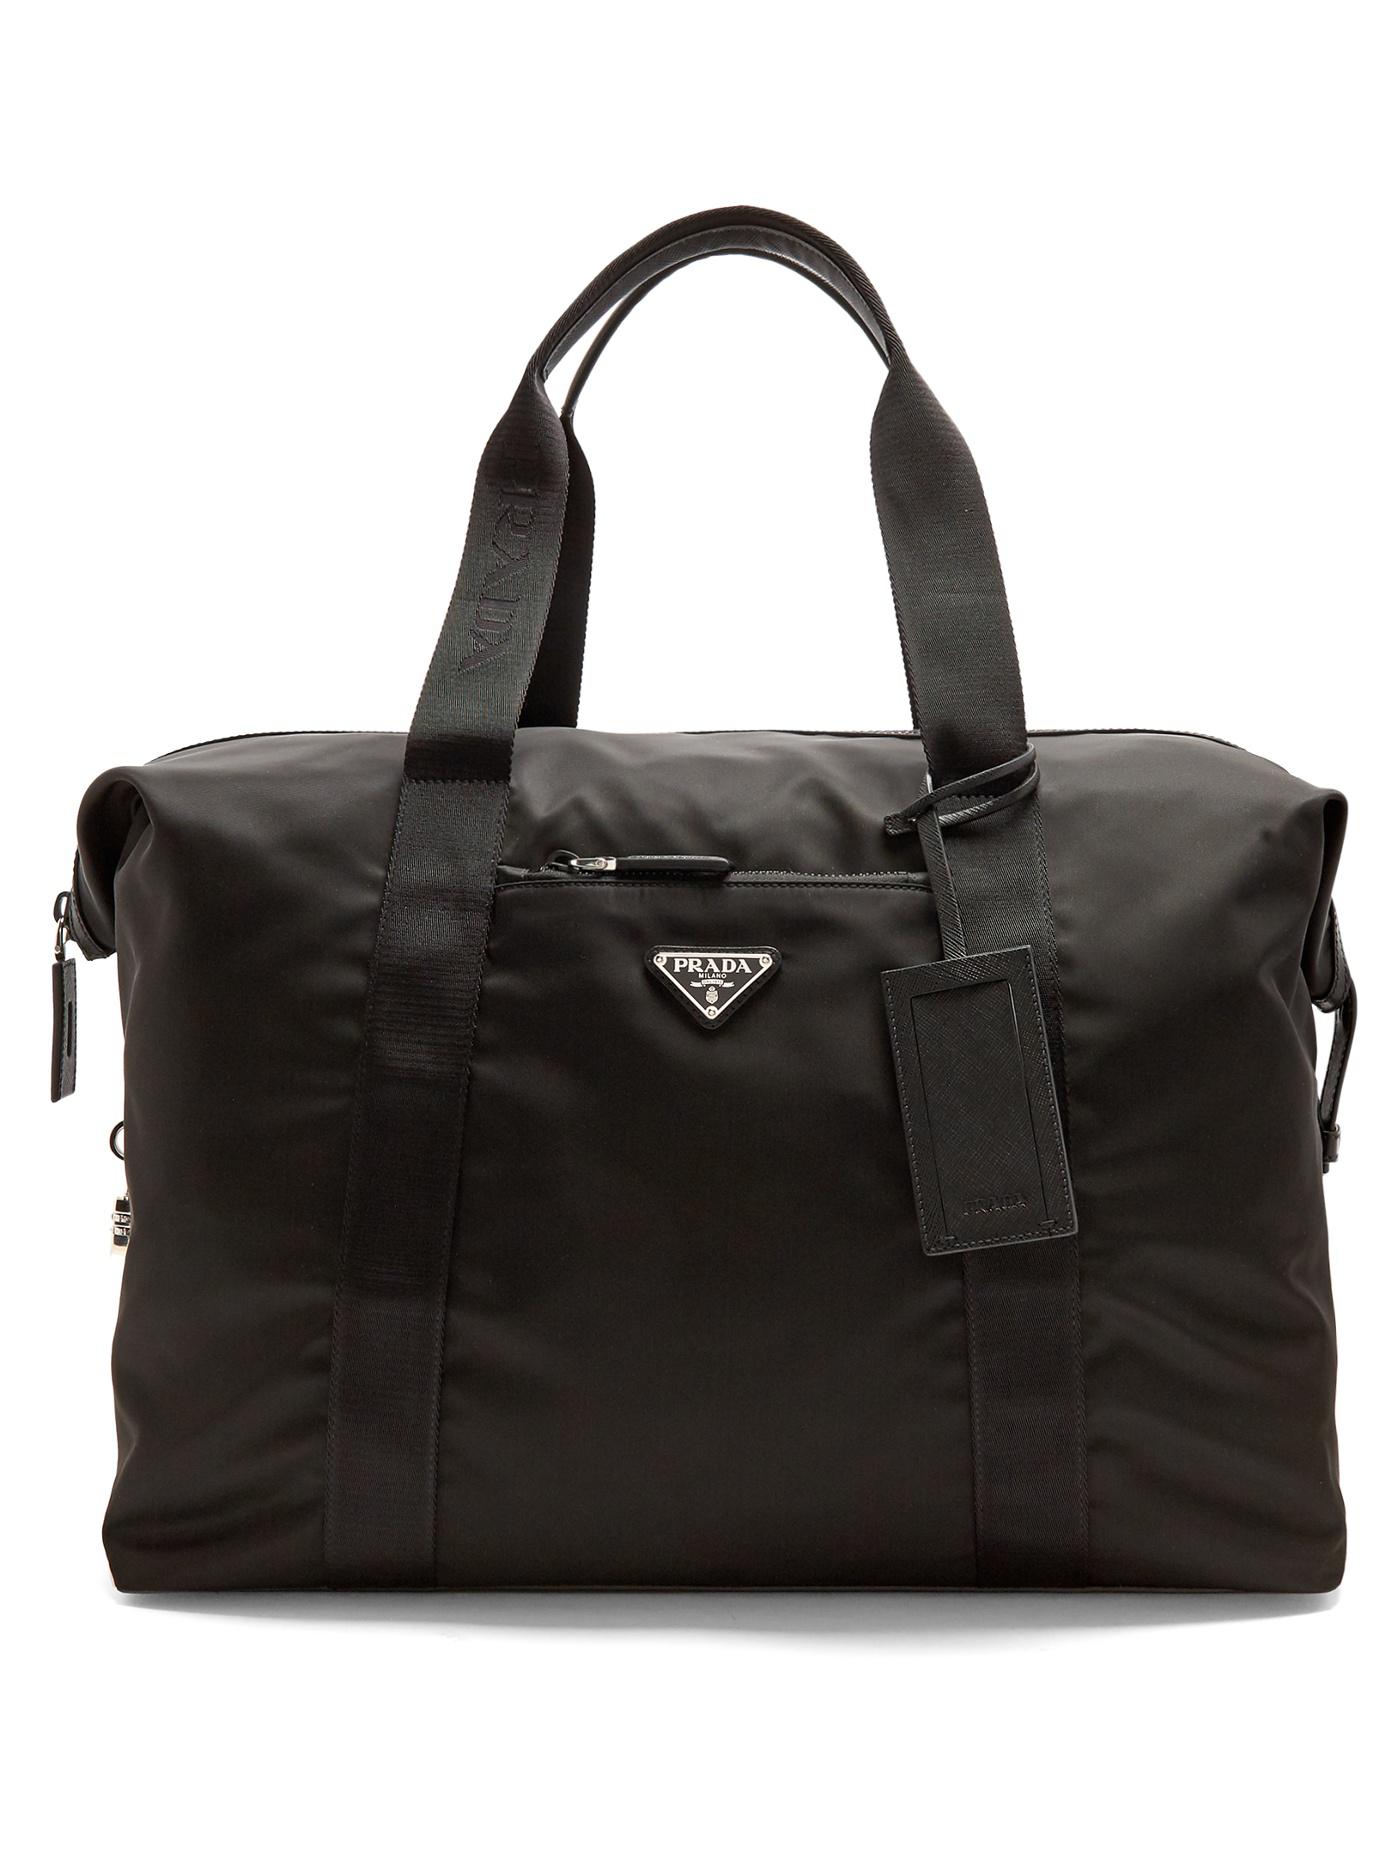 Lyst - Prada Top-handle Nylon Weekend Bag in Black for Men